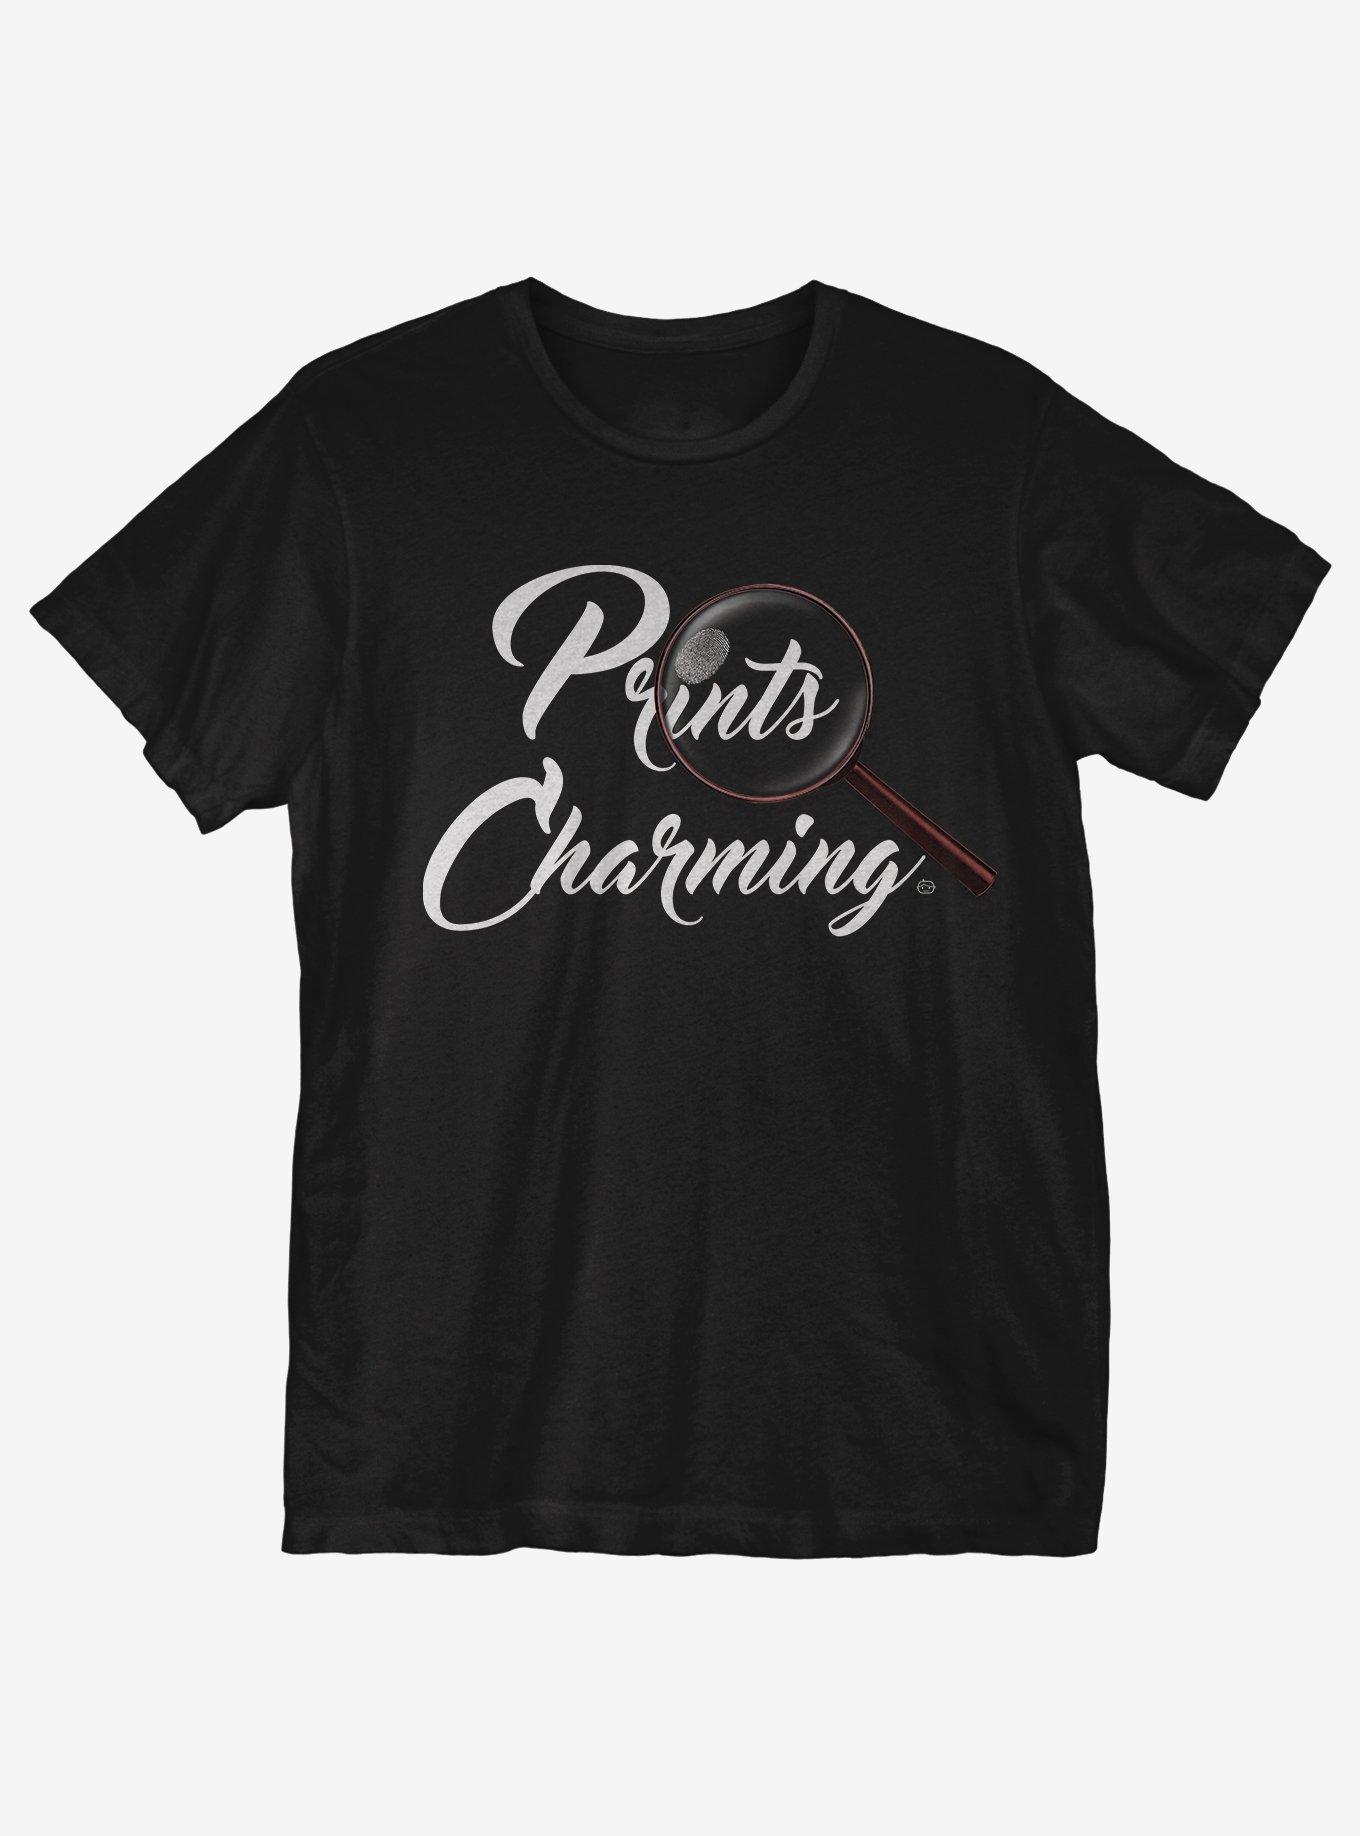 Prints Charming T-Shirt